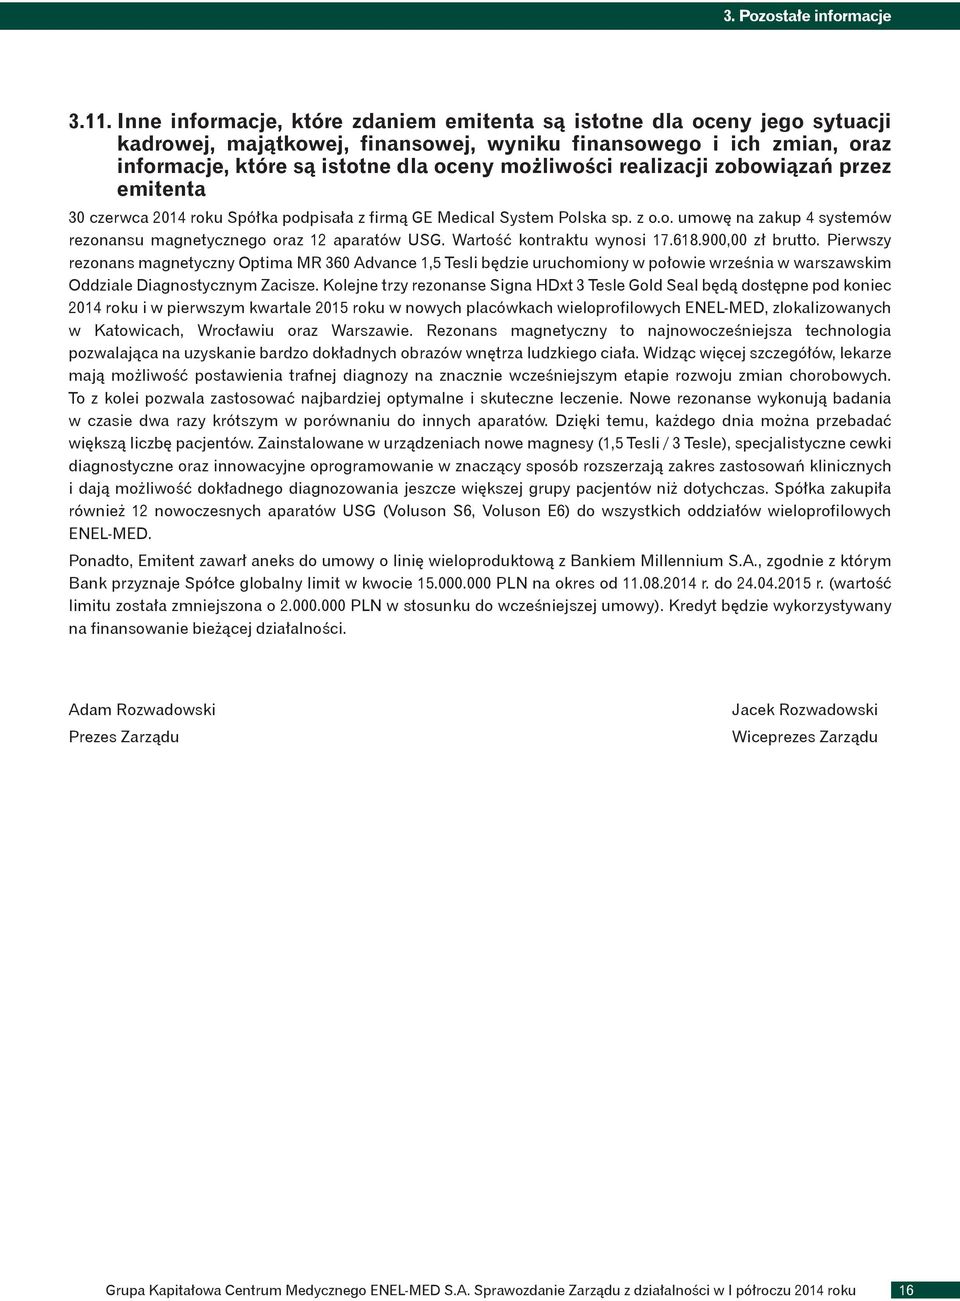 realizacji zobowiązań przez emitenta 30 czerwca 2014 roku Spółka podpisała z firmą GE Medical System Polska sp. z o.o. umowę na zakup 4 systemów rezonansu magnetycznego oraz 12 aparatów USG.